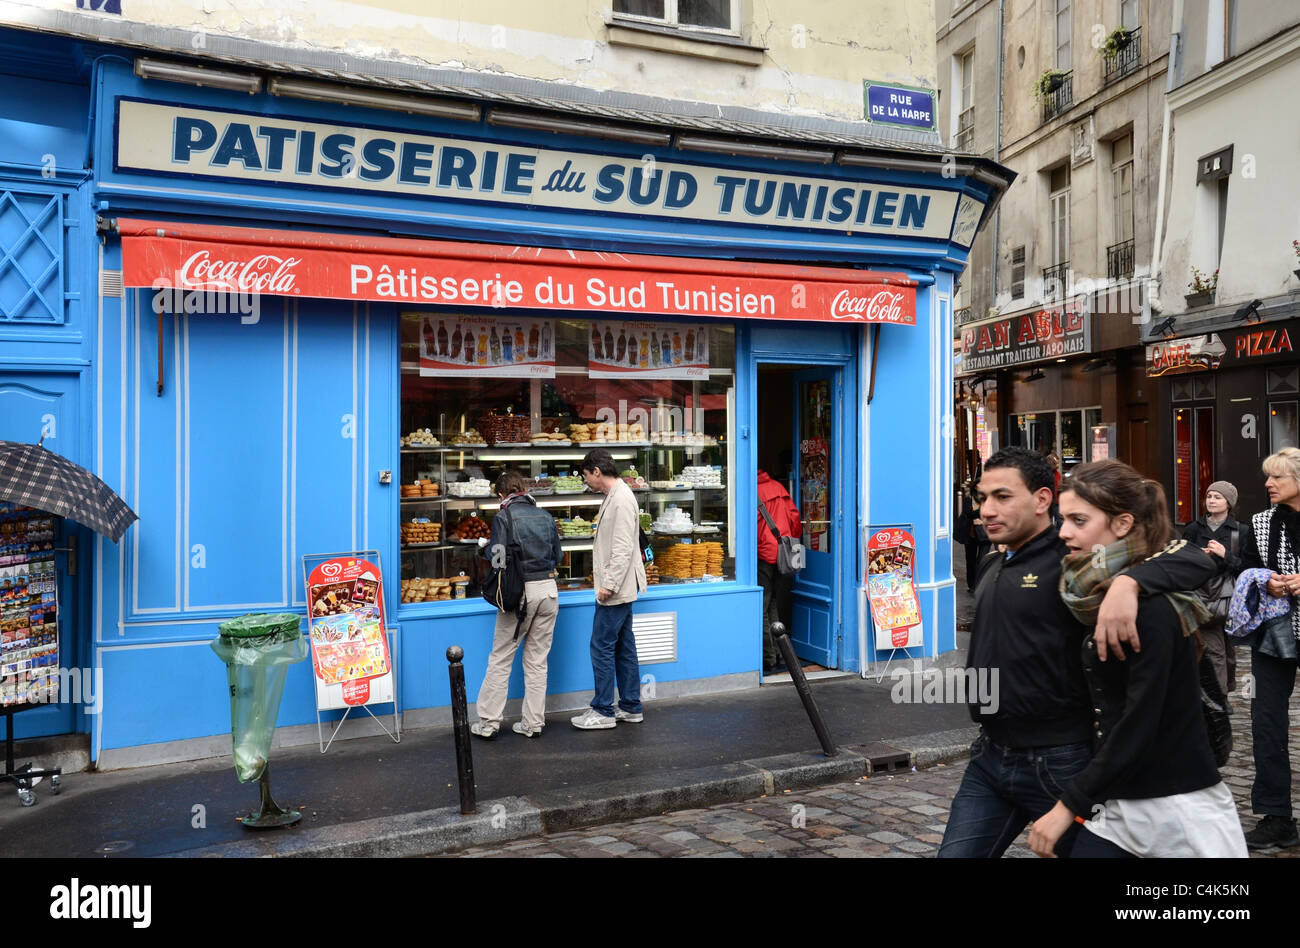 Patisserie du Sud Tunisien on the Rue de la Harpe, Paris, France. Stock Photo